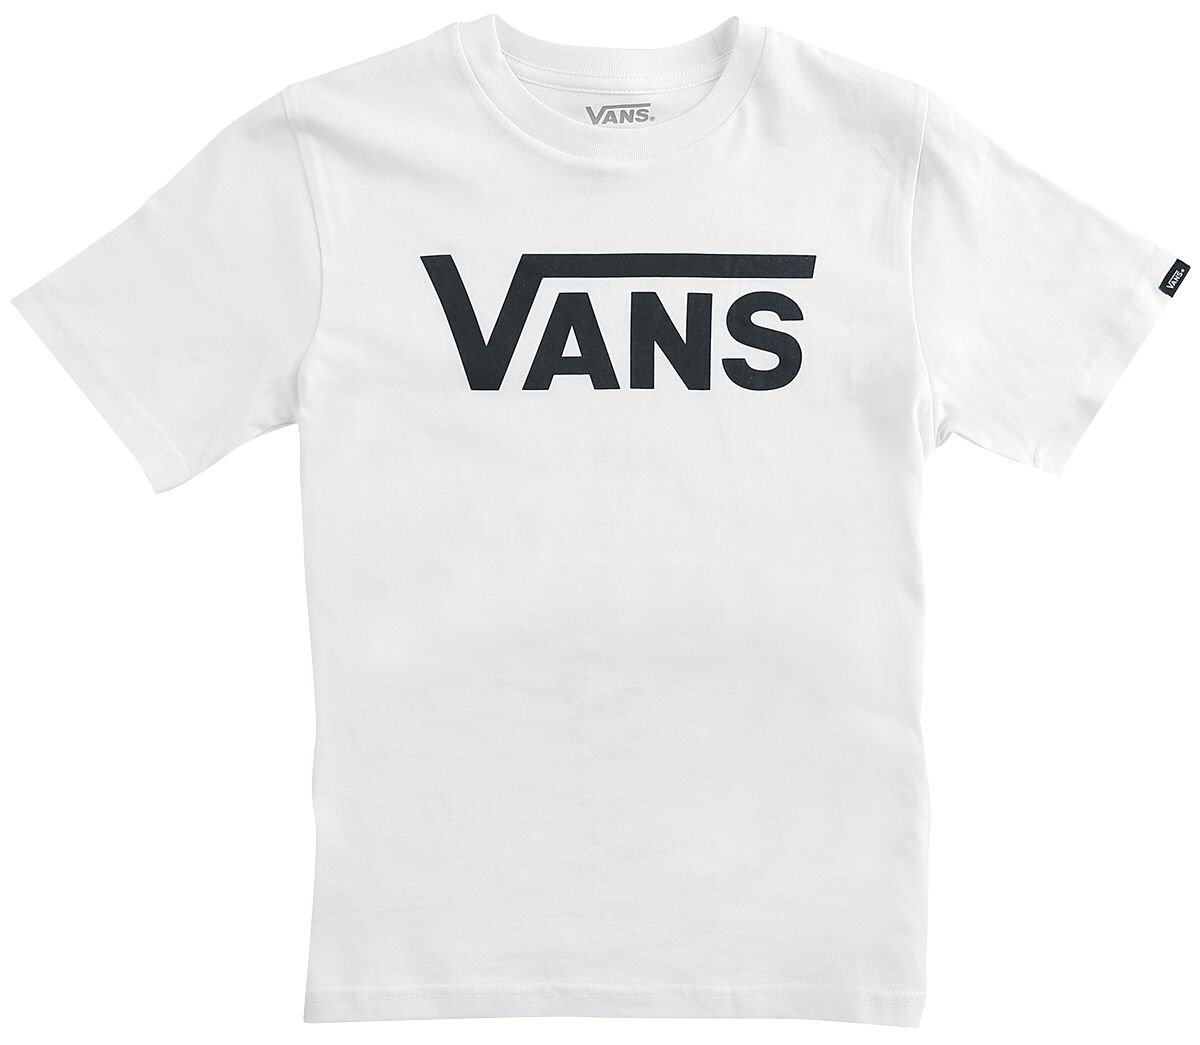 Vans Kids T-Shirt - By VANS Classic Tee - S bis XL - für Mädchen & Jungen - Größe L - weiß